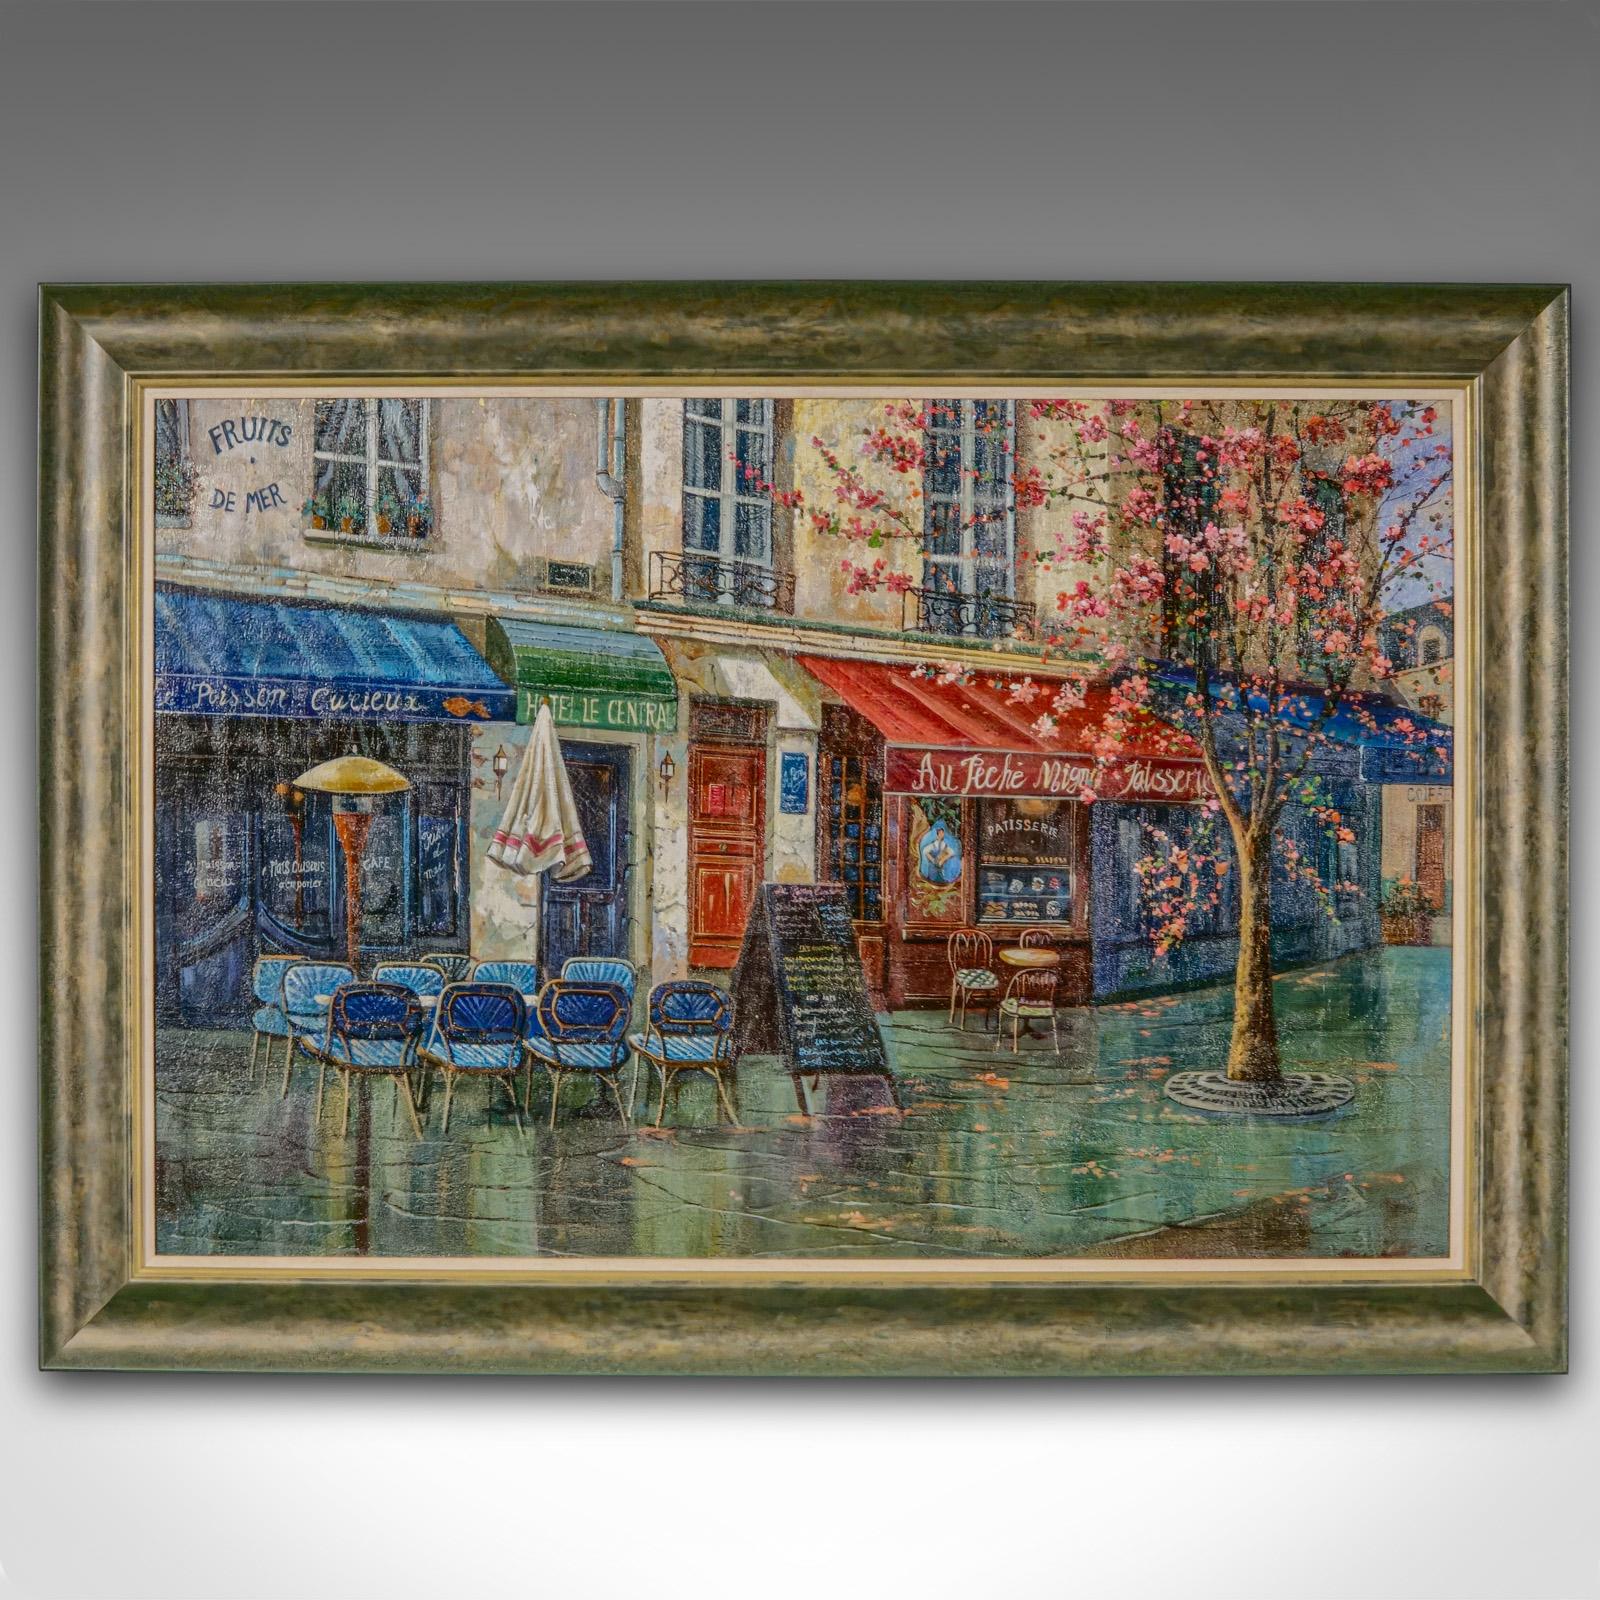 Il s'agit d'une grande huile sur toile d'époque représentant un Paris. Scène de rue parisienne non signée dans un cadre de qualité, datant de la fin du 20e siècle.

Scène de rue évocatrice et pleine de charme d'un trottoir parisien détrempé par la